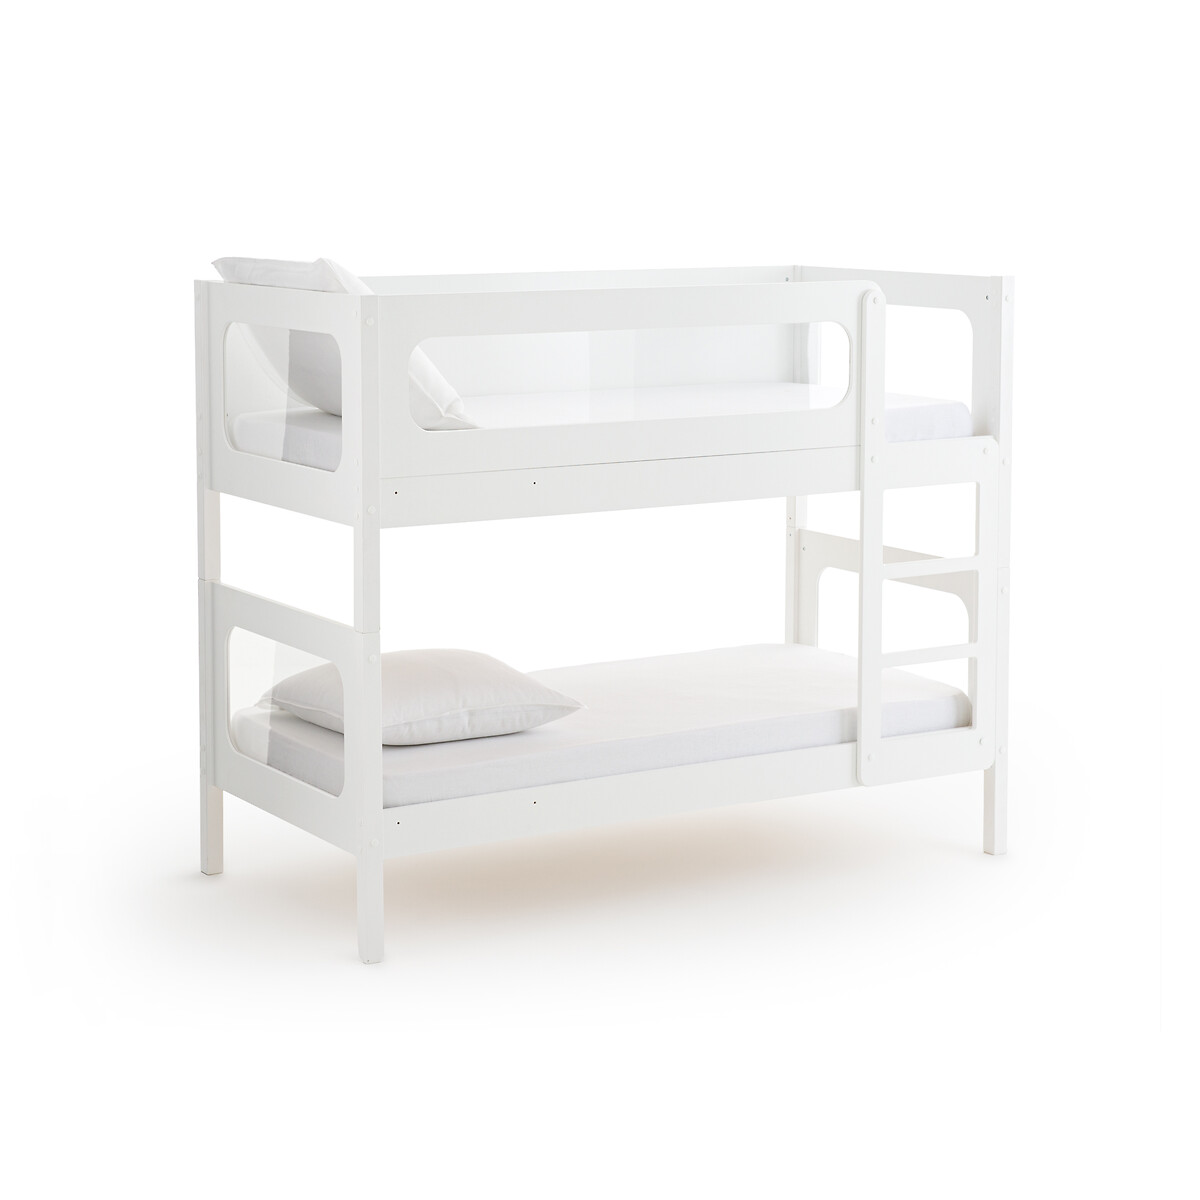 Кровать Двухъярусная с кроватным основанием Pilha 90 x 190 см белый LaRedoute, размер 90 x 190 см